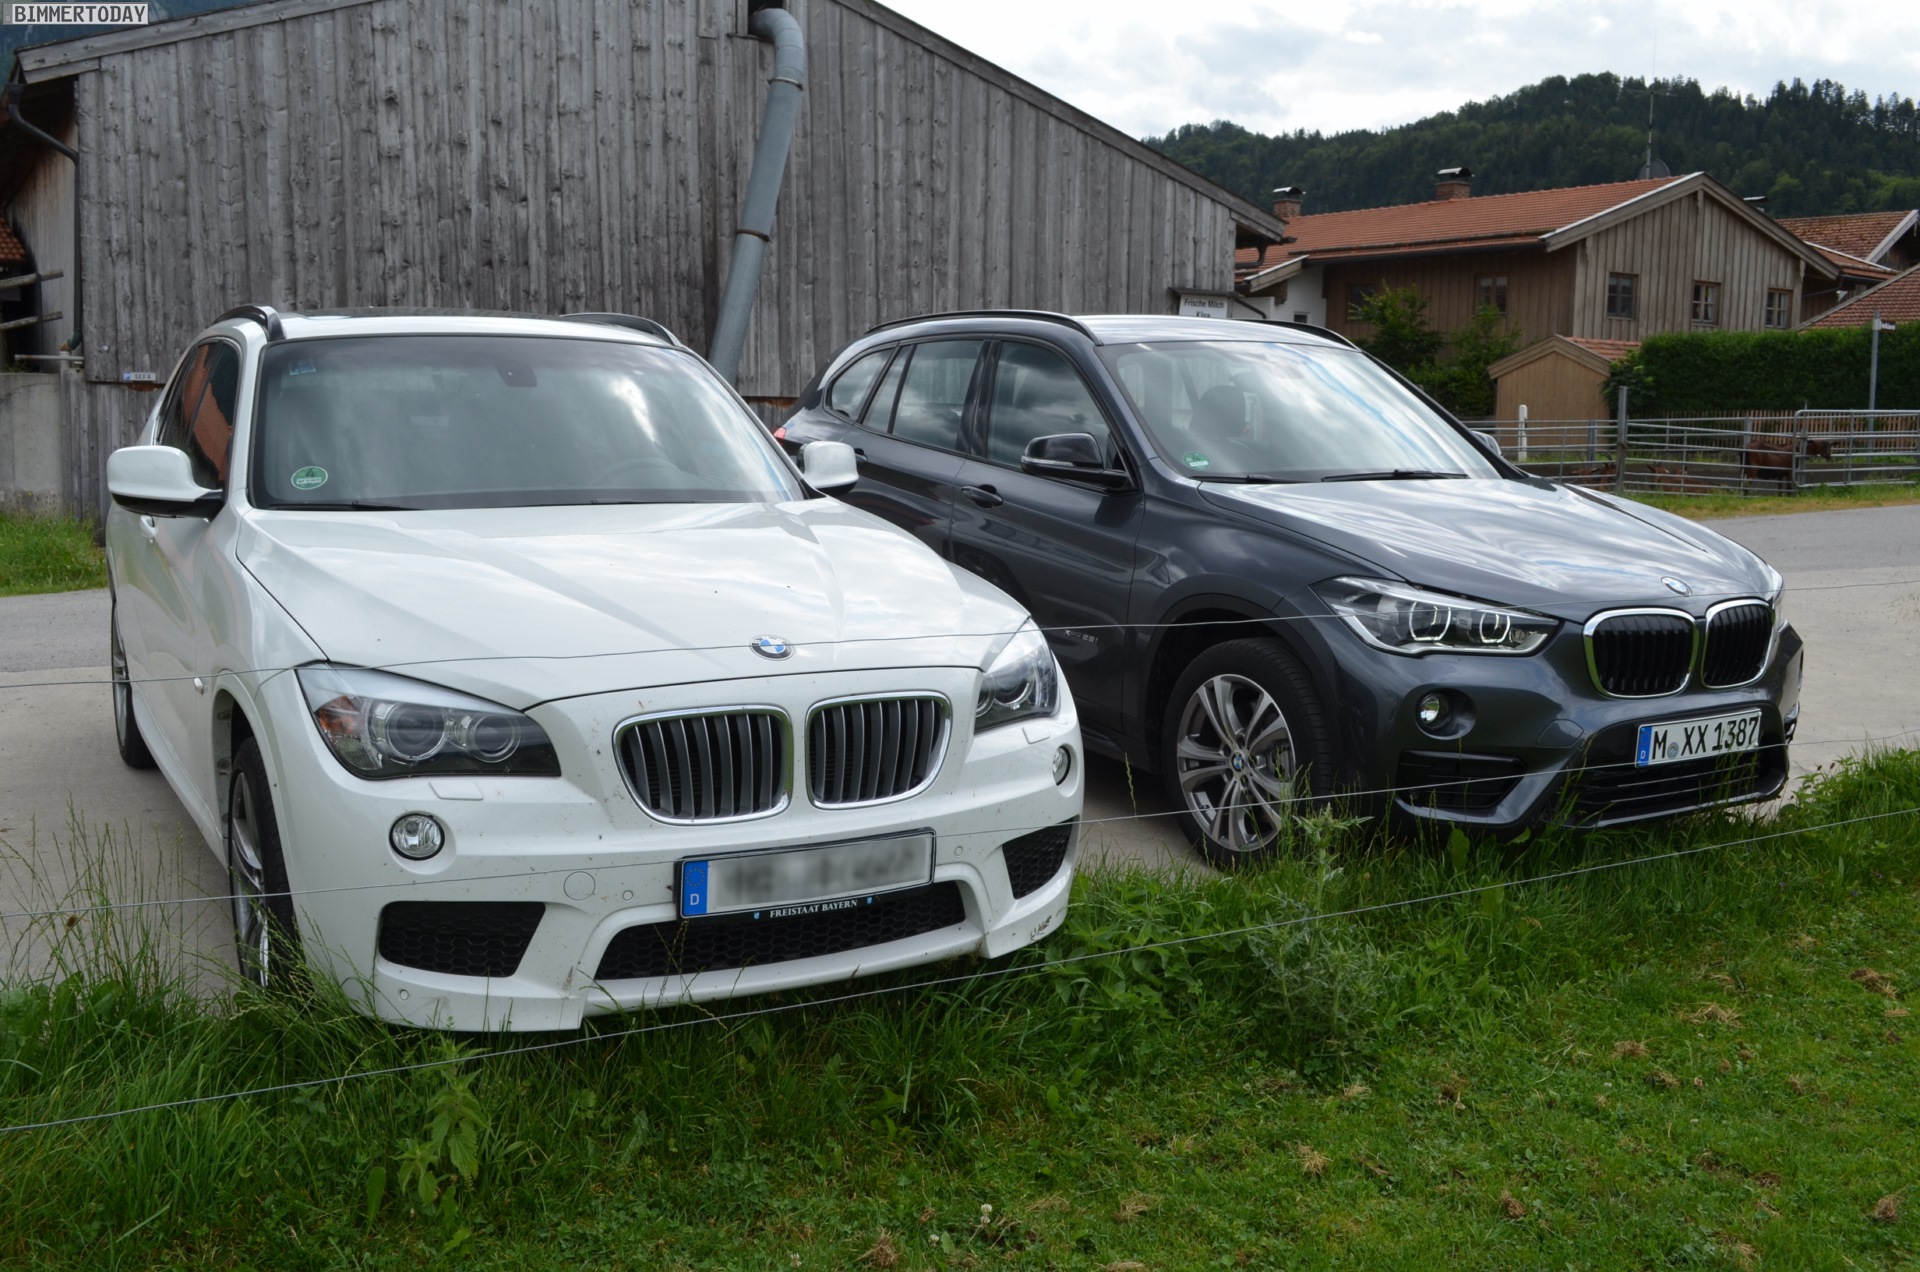 2015 BMW X1 F48 vs E84 Generationen Vergleich 07